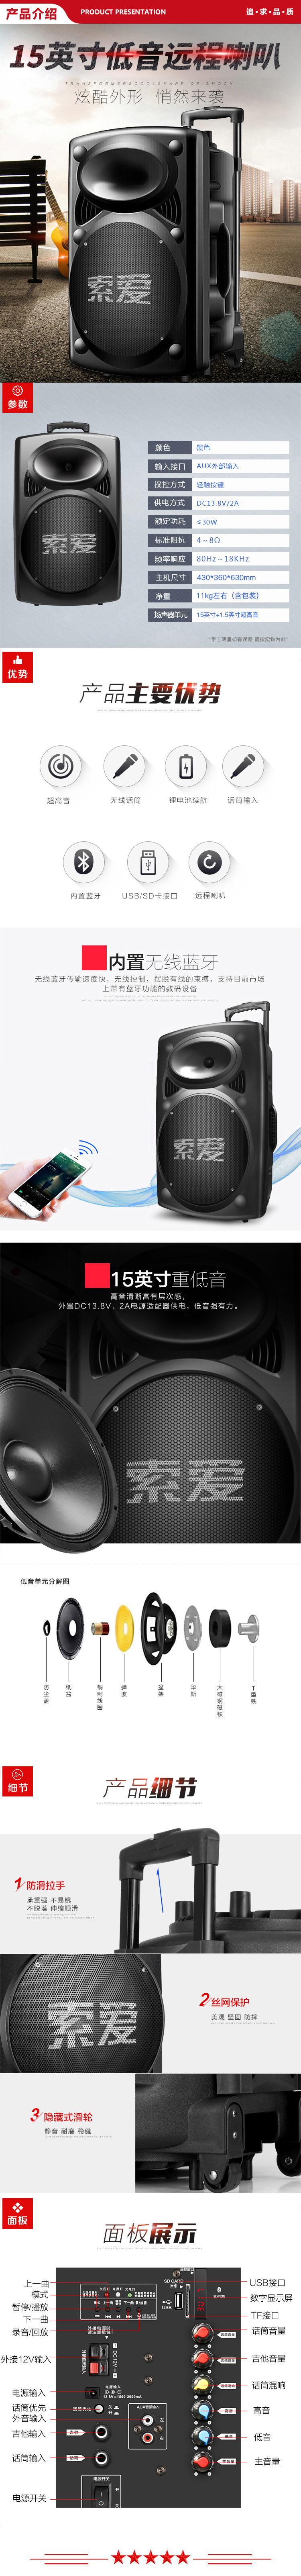 索爱 soaiy A90 15英寸大功率重低音音响 移动户外蓝牙音箱扩音器+无线麦克风 .jpg